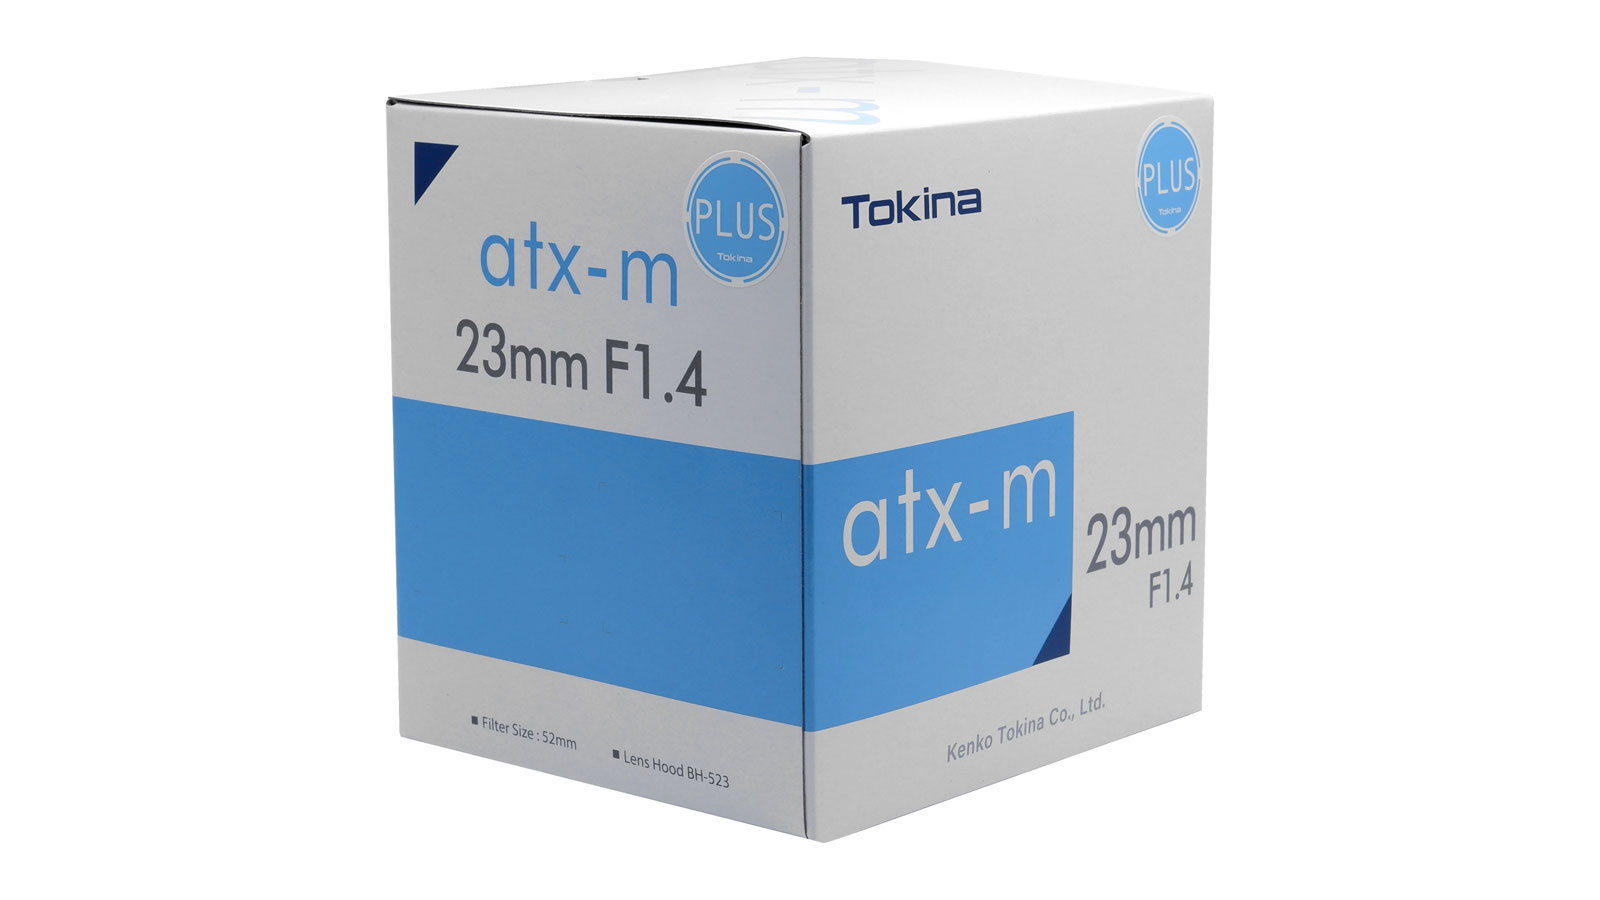 Пример упаковки серии Tokina atx-m с наклейкой "PLUS".